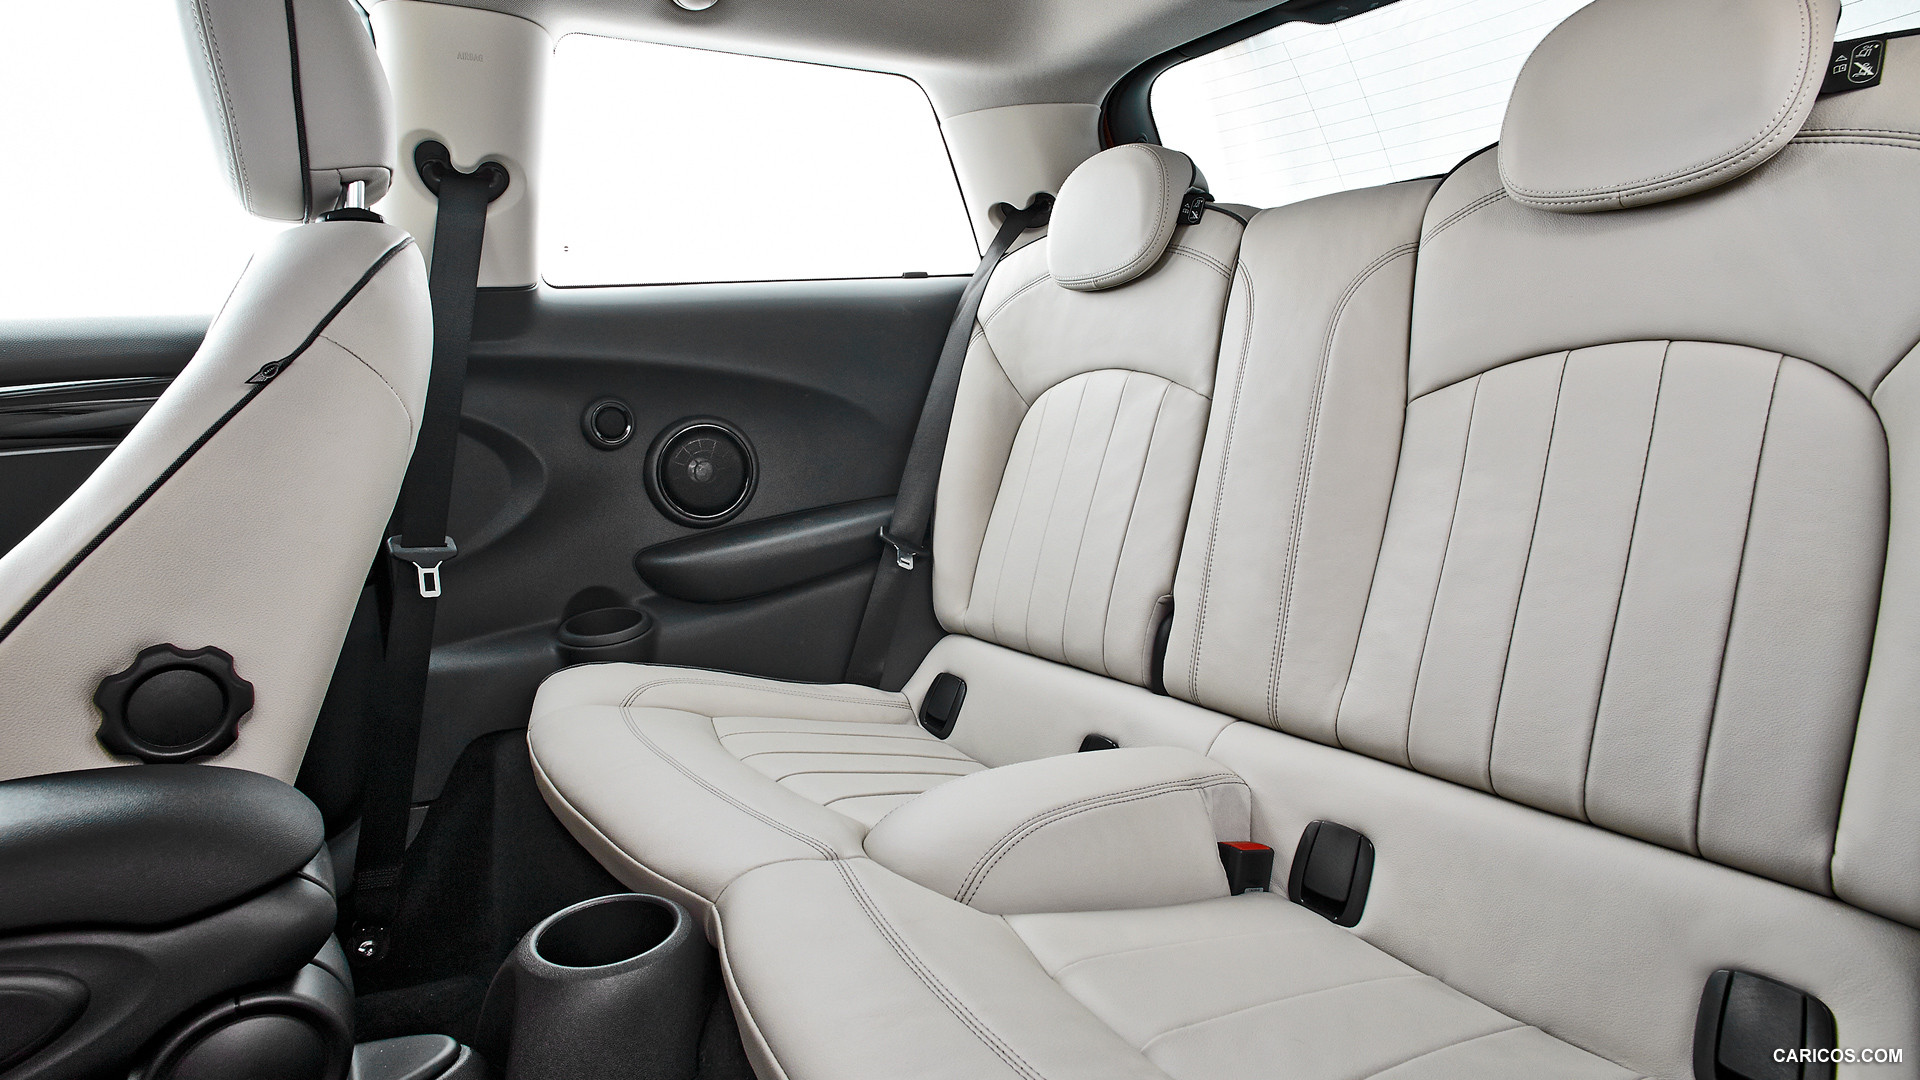 2015 MINI Cooper  - Interior Rear Seats, #97 of 280